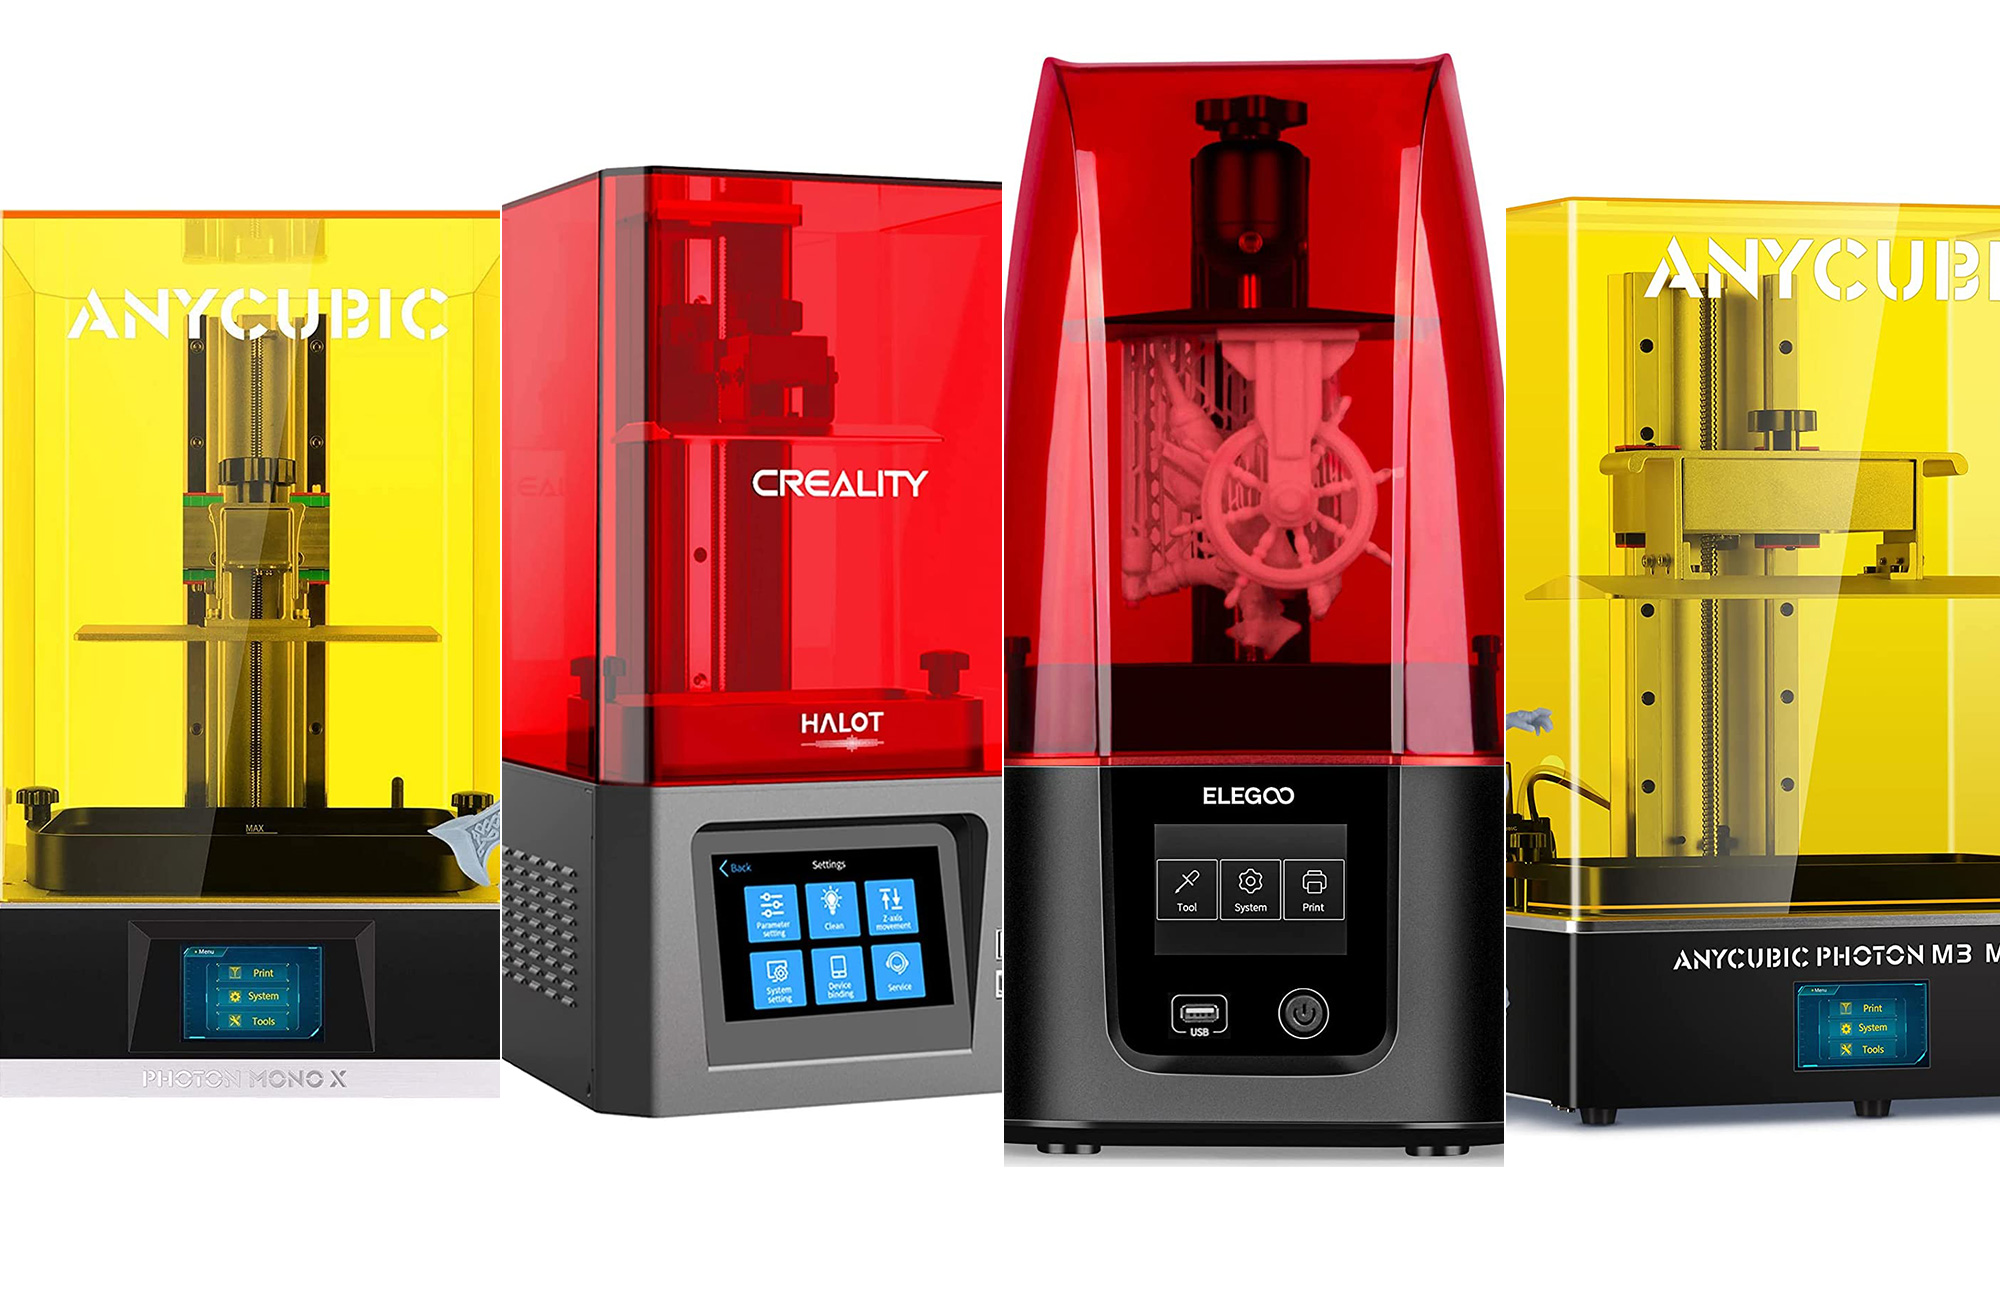 Elegoo Mars Review: Great Budget Resin 3D Printer